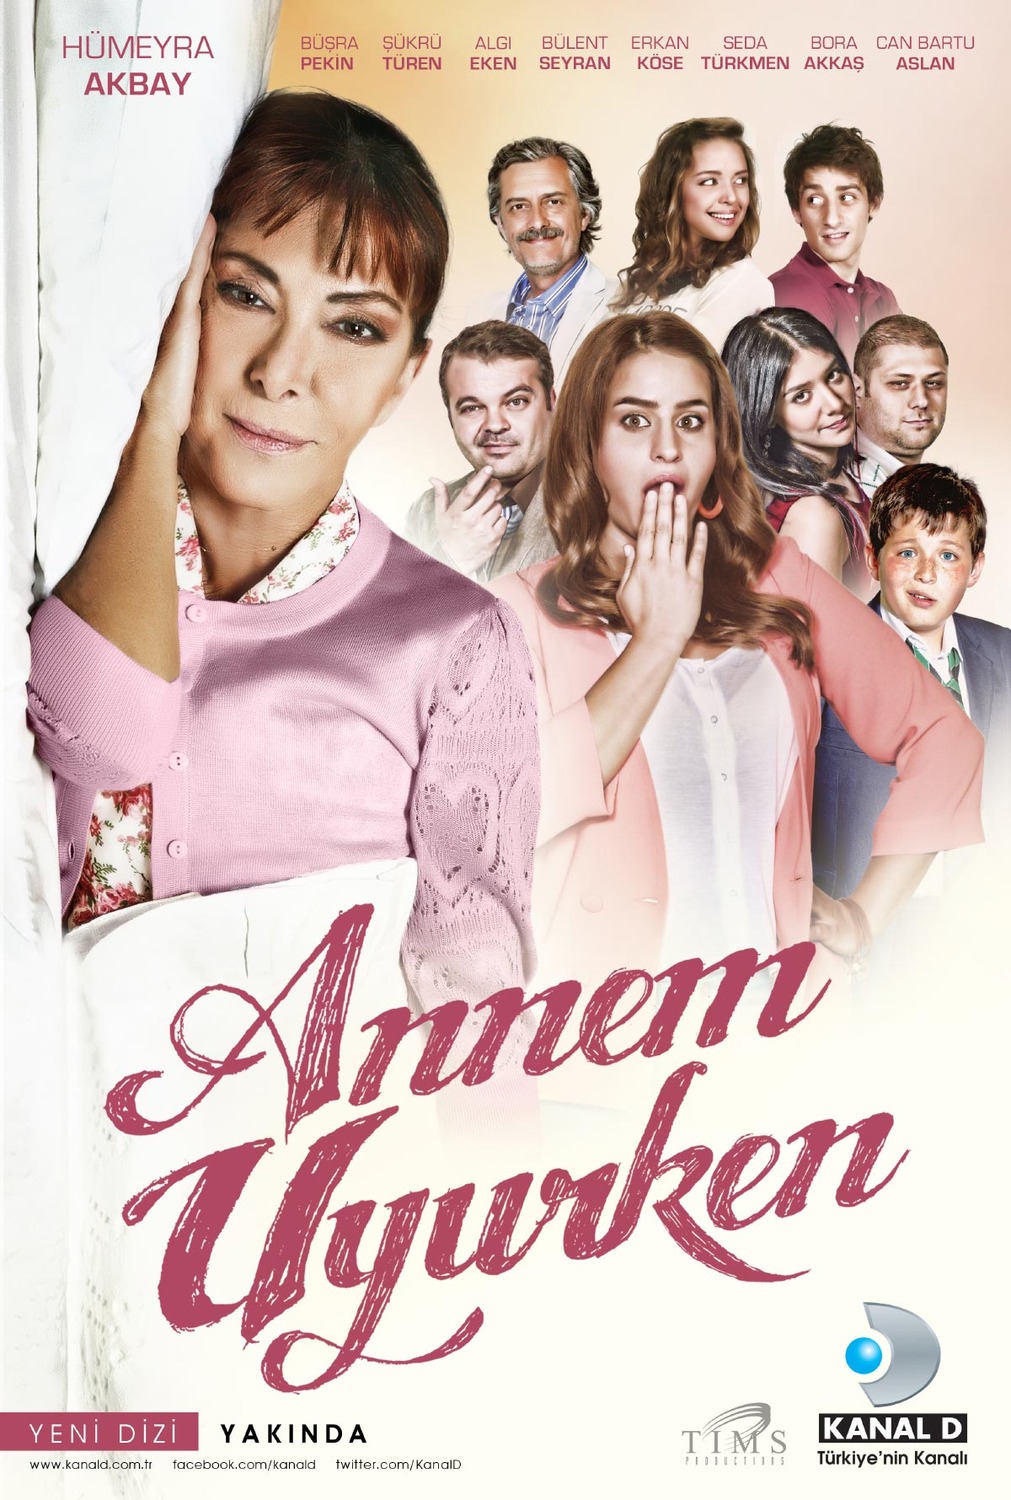 Extra Large TV Poster Image for Annem uyurken 